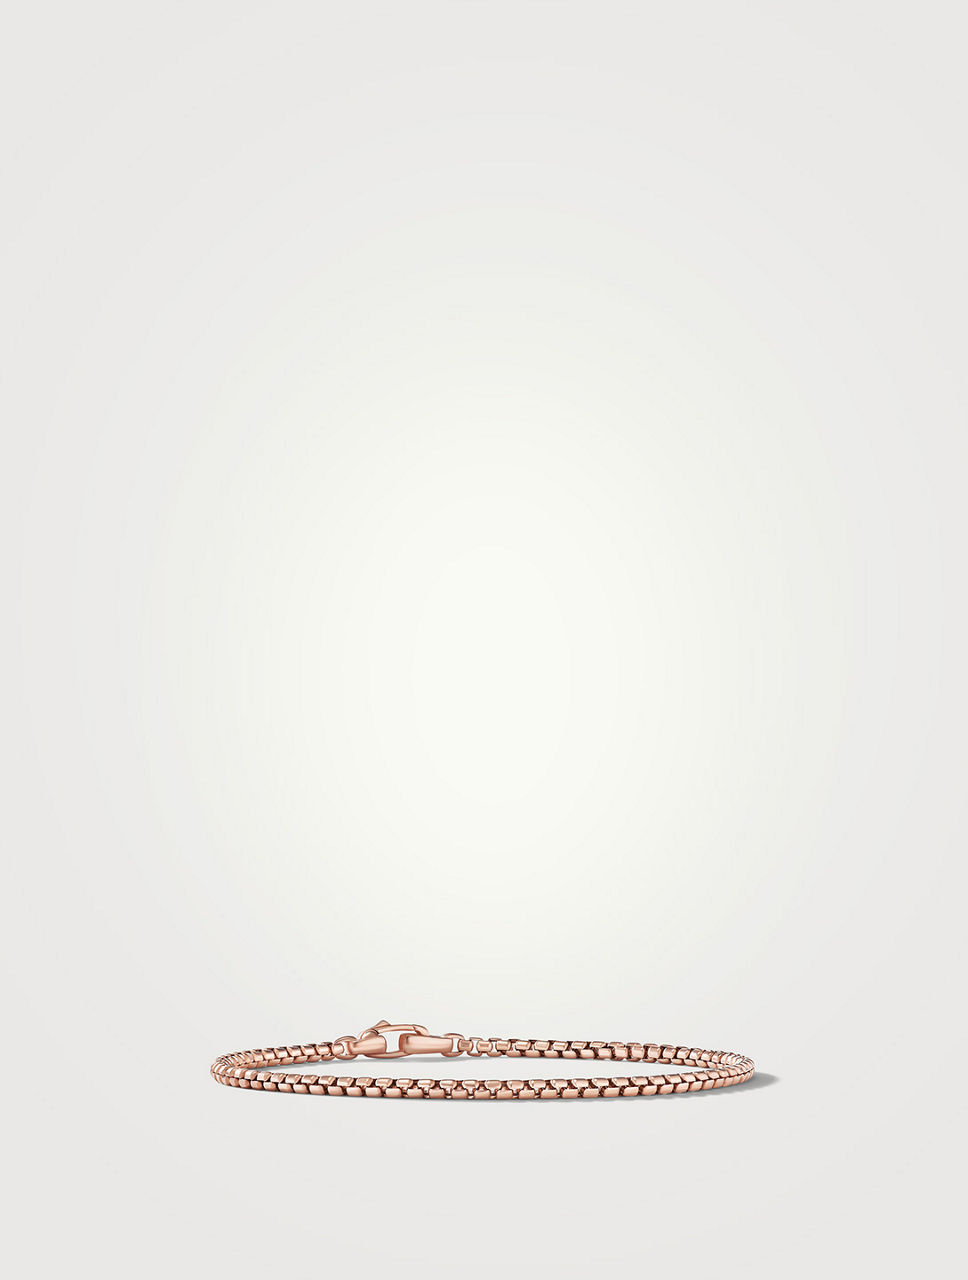 Box Chain Bracelet In 18k Rose Gold, 2.7mm